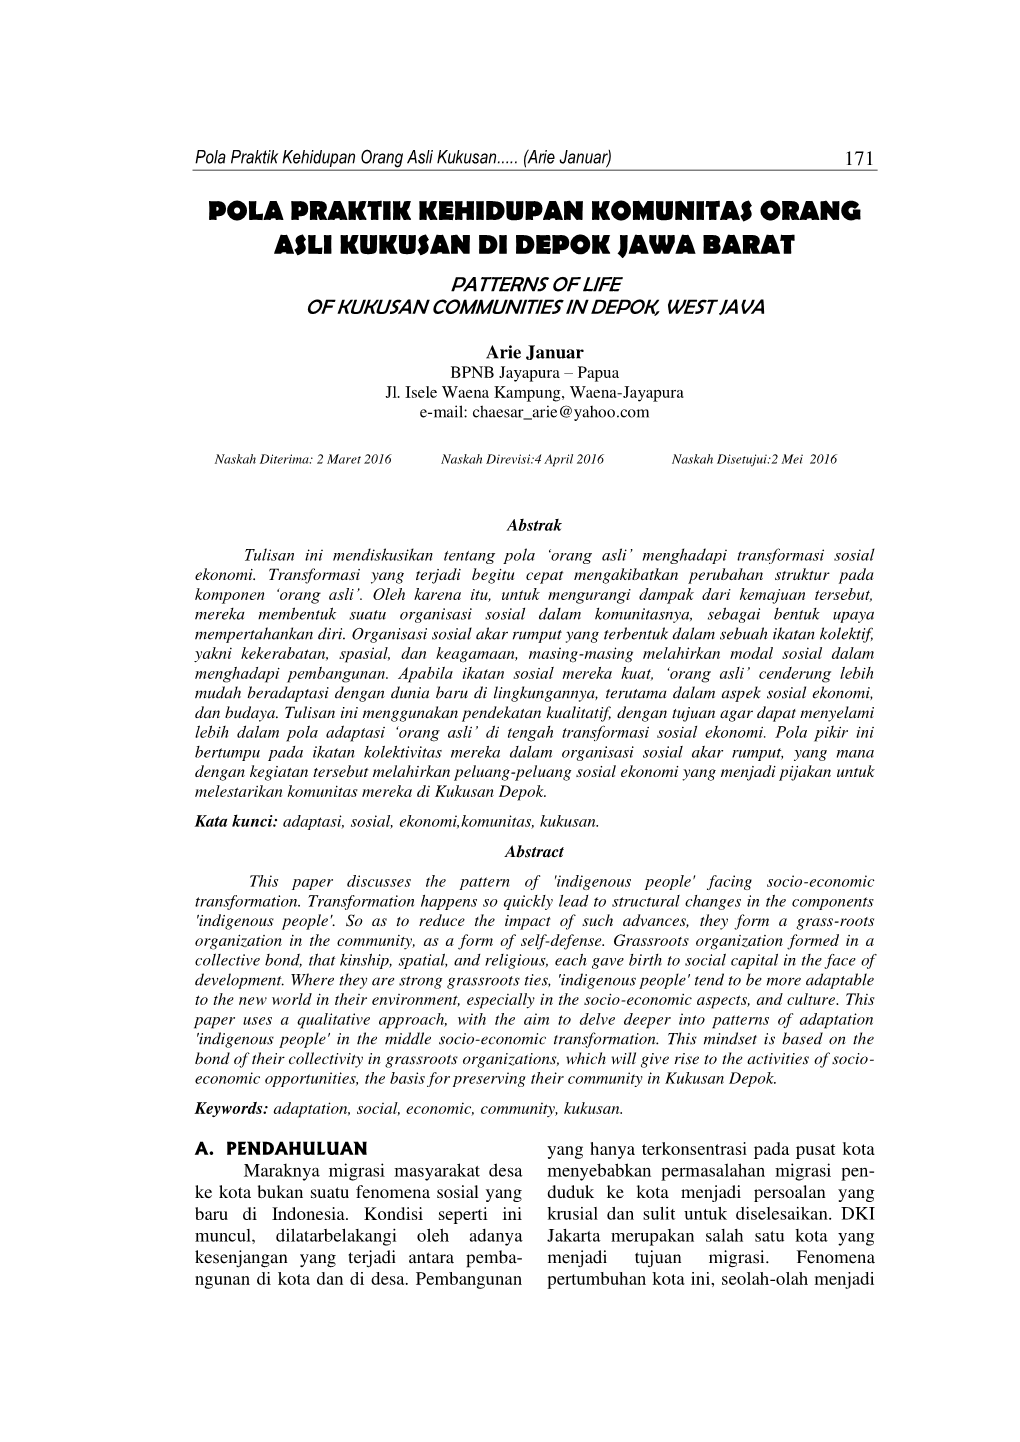 Pola Praktik Kehidupan Komunitas Orang Asli Kukusan Di Depok Jawa Barat Patterns of Life of Kukusan Communities in Depok, West Java